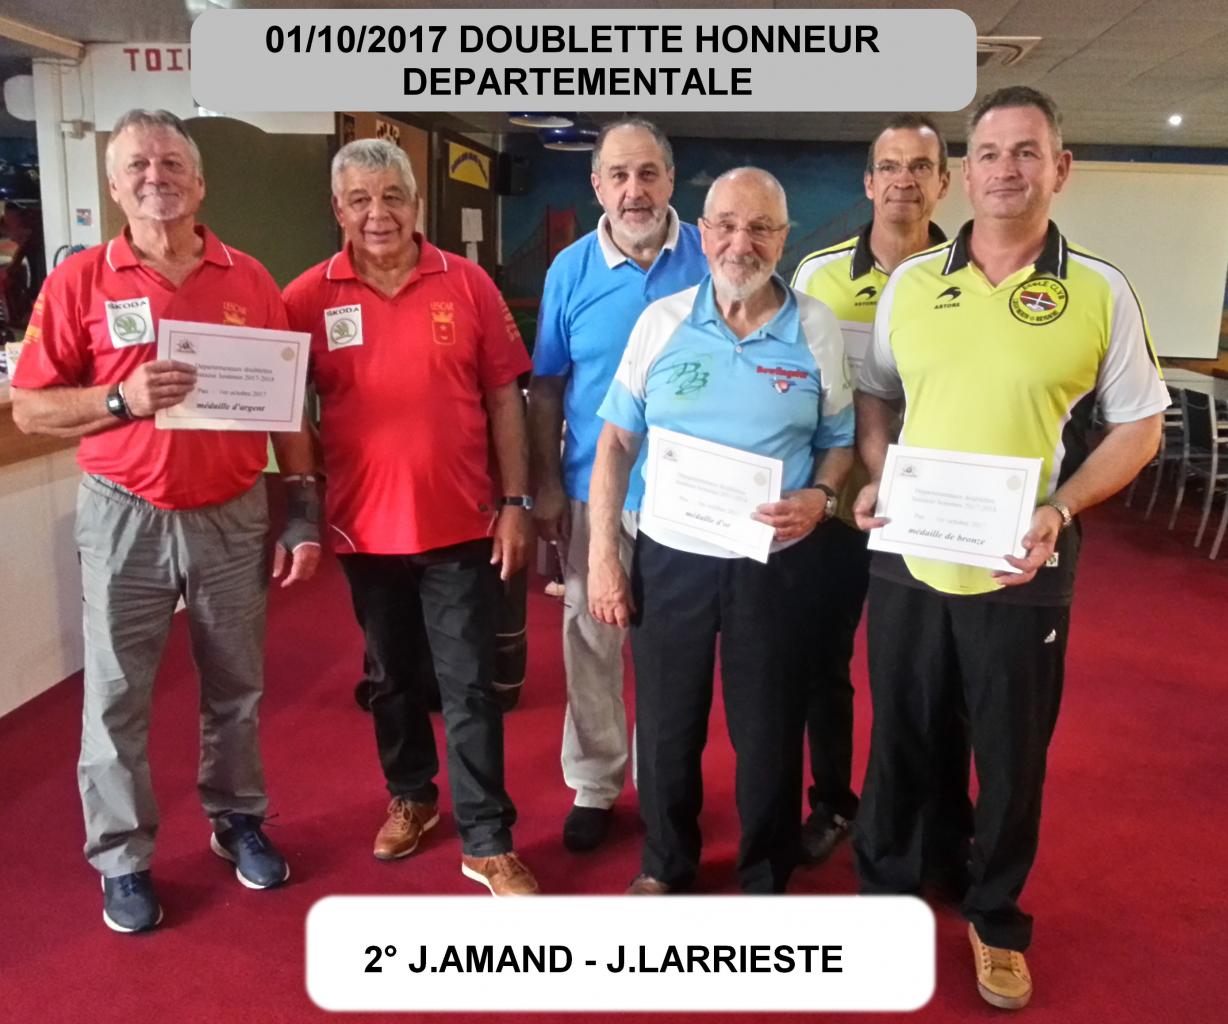 doublette honneur departementale saison 2017/2018